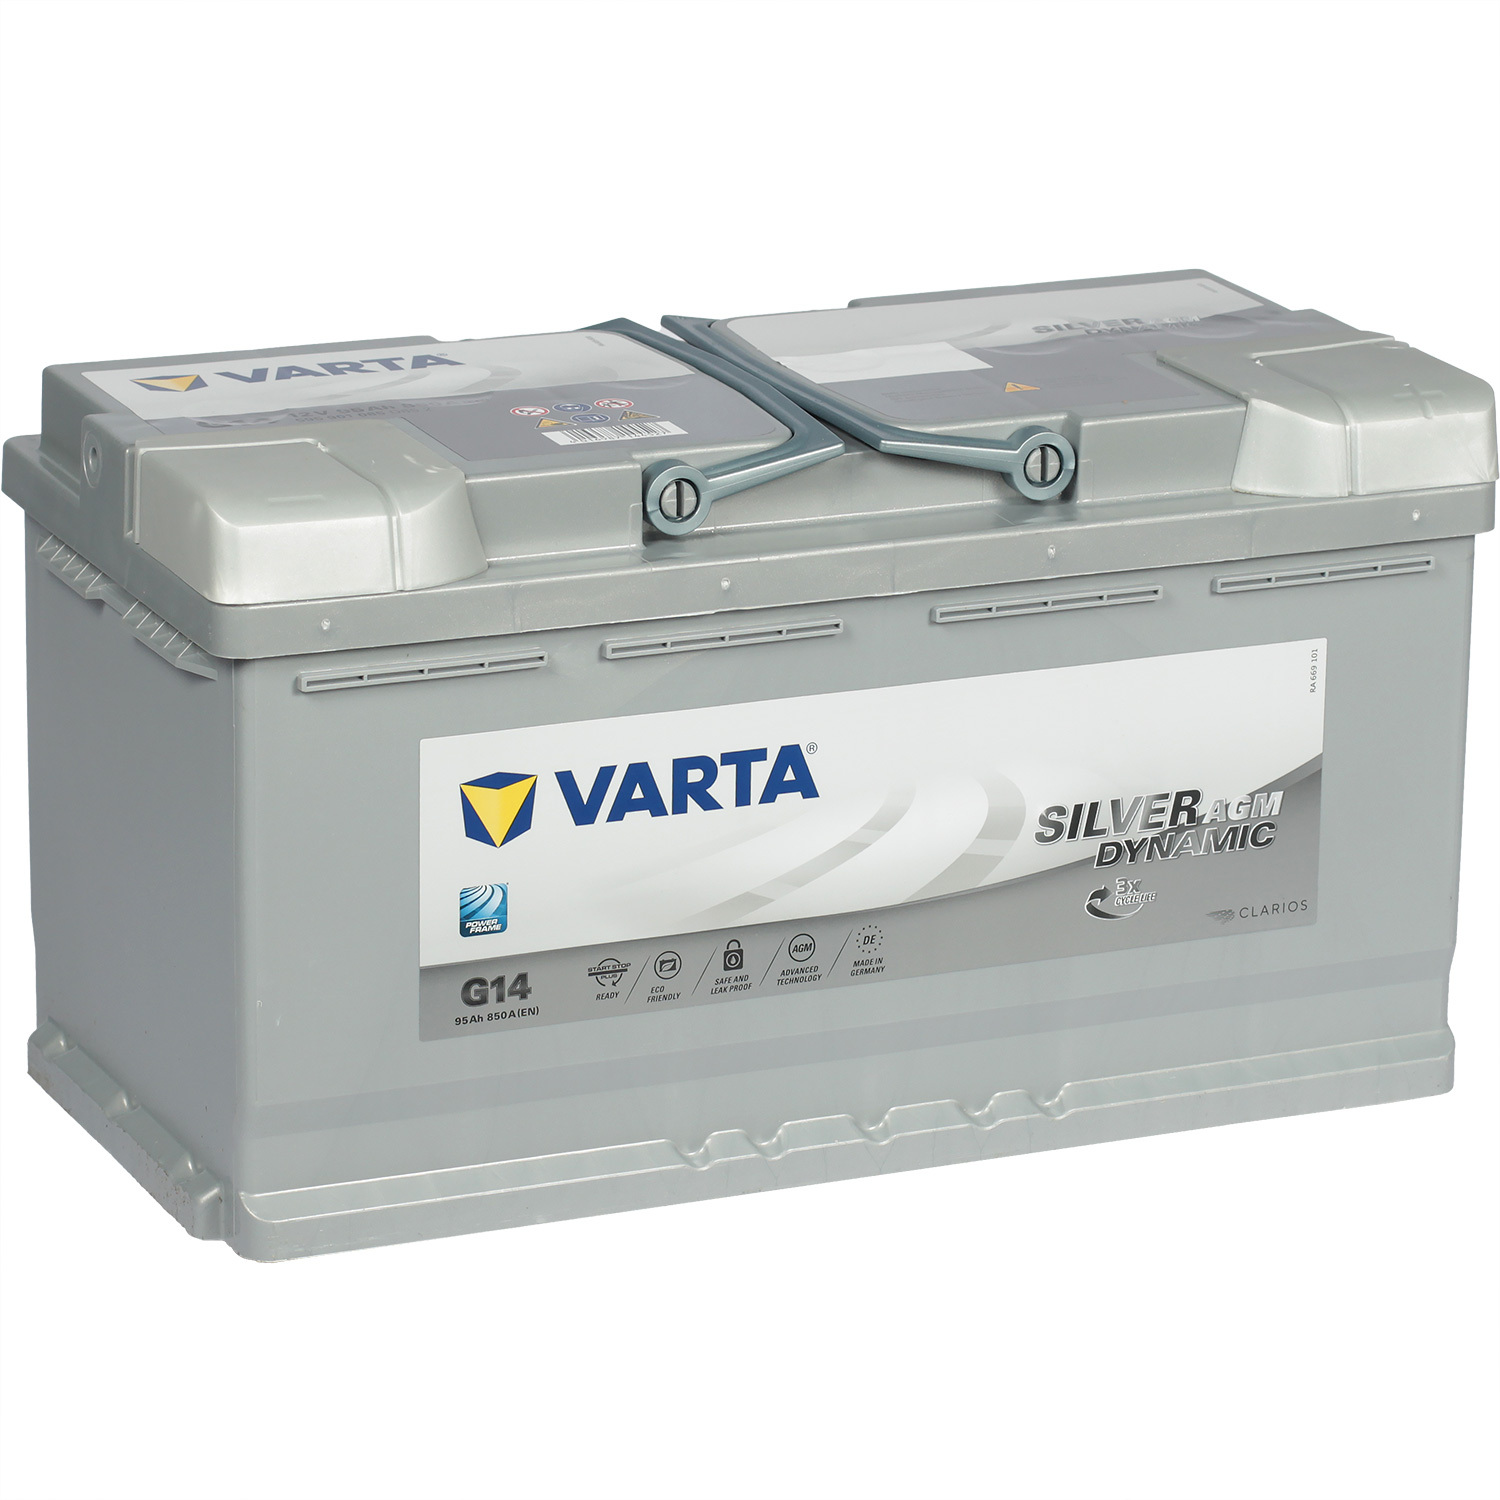 Varta Автомобильный аккумулятор Varta AGM G14 95 Ач обратная полярность L5 varta автомобильный аккумулятор varta silver dynamic agm 605 901 095 105 ач обратная полярность l6